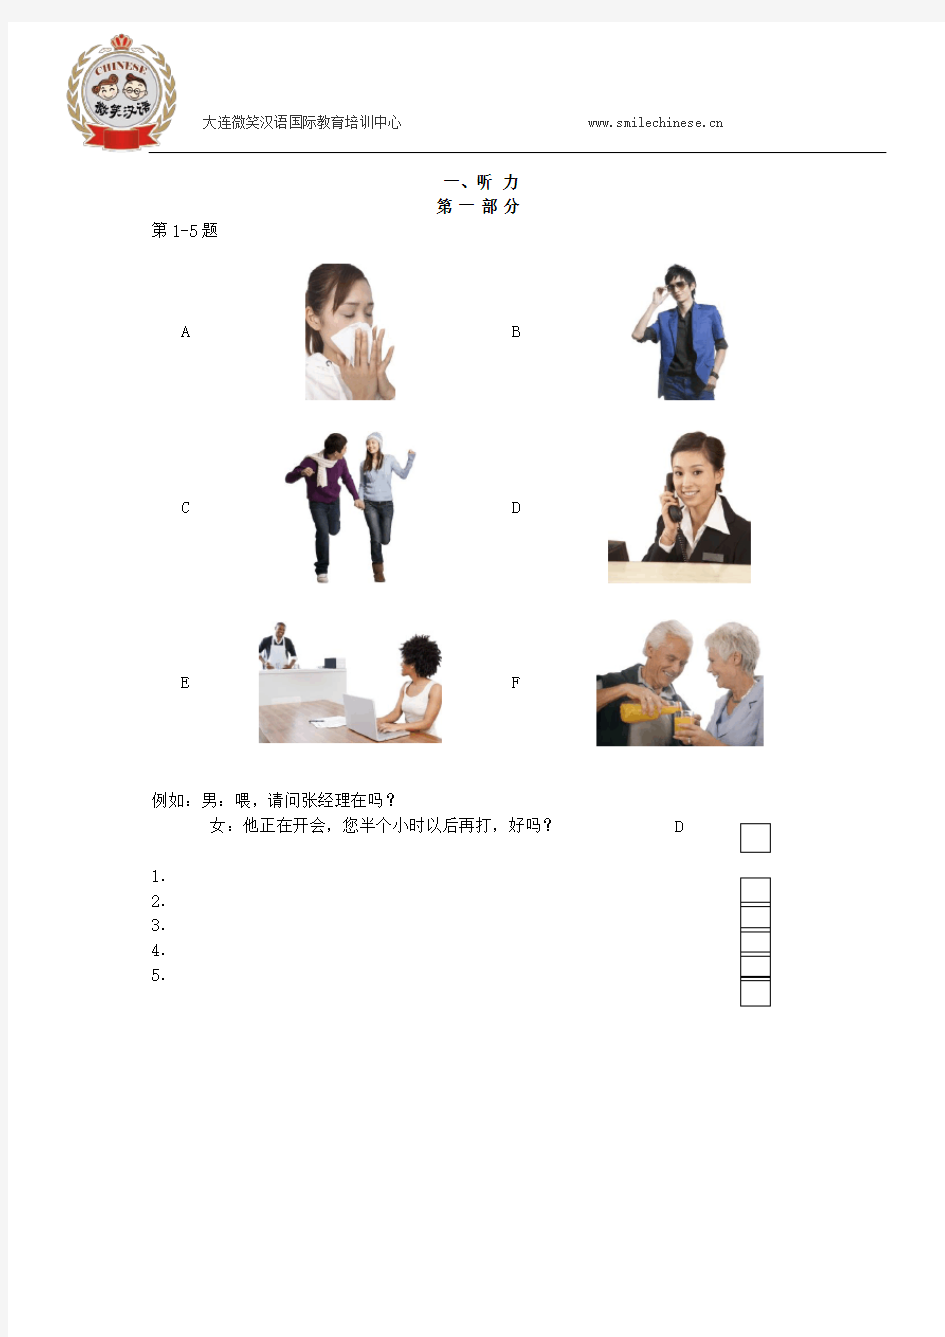 2016国家汉办(HSK)汉语水平考试三级考试真题